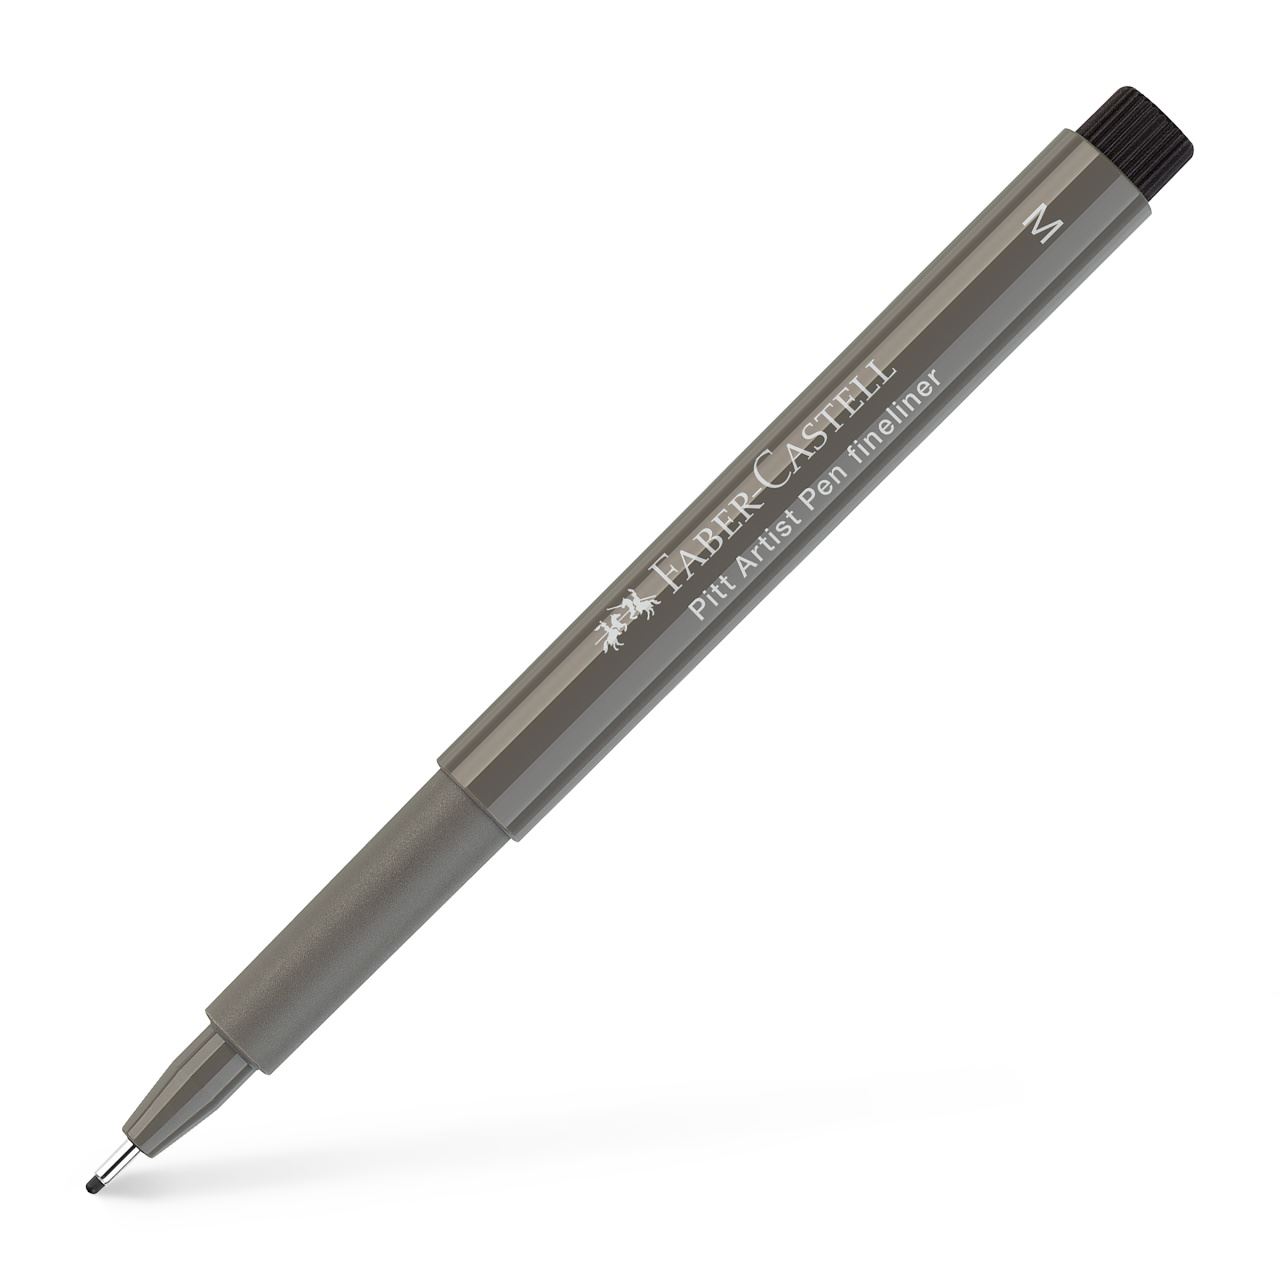 Faber-Castell - Rotulador Pitt Artist Pen M, gris cálido IV